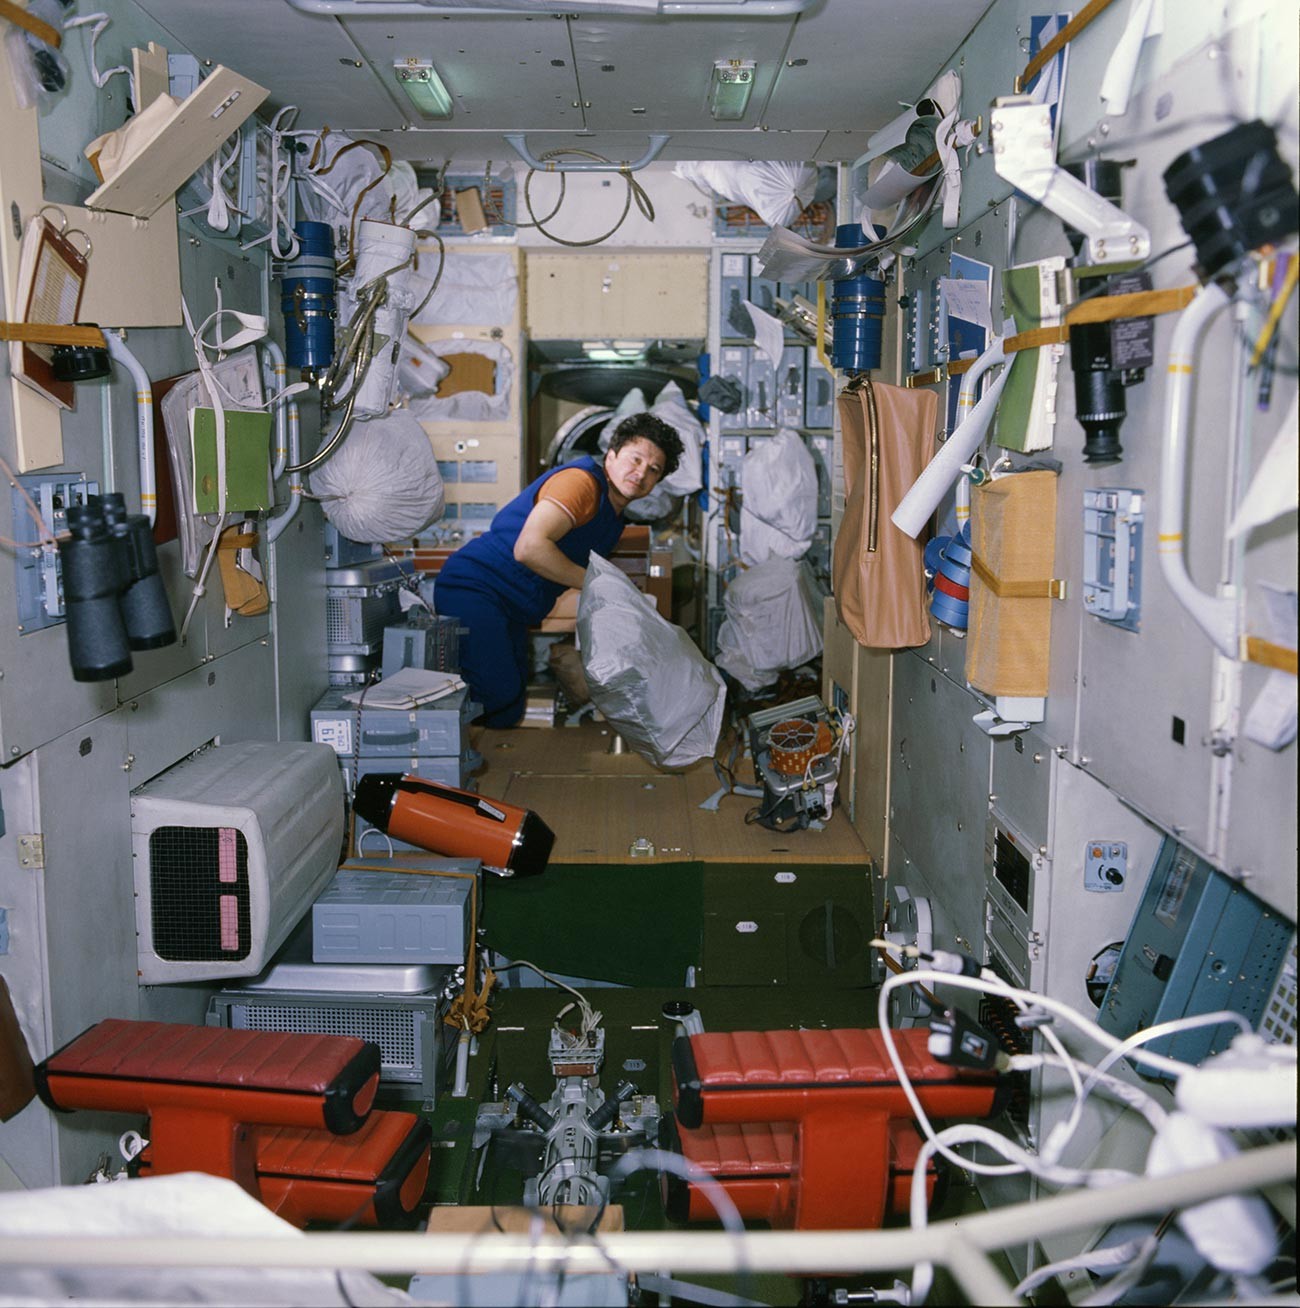 Suasana di dalam stasiun antariksa MIR, 1986.